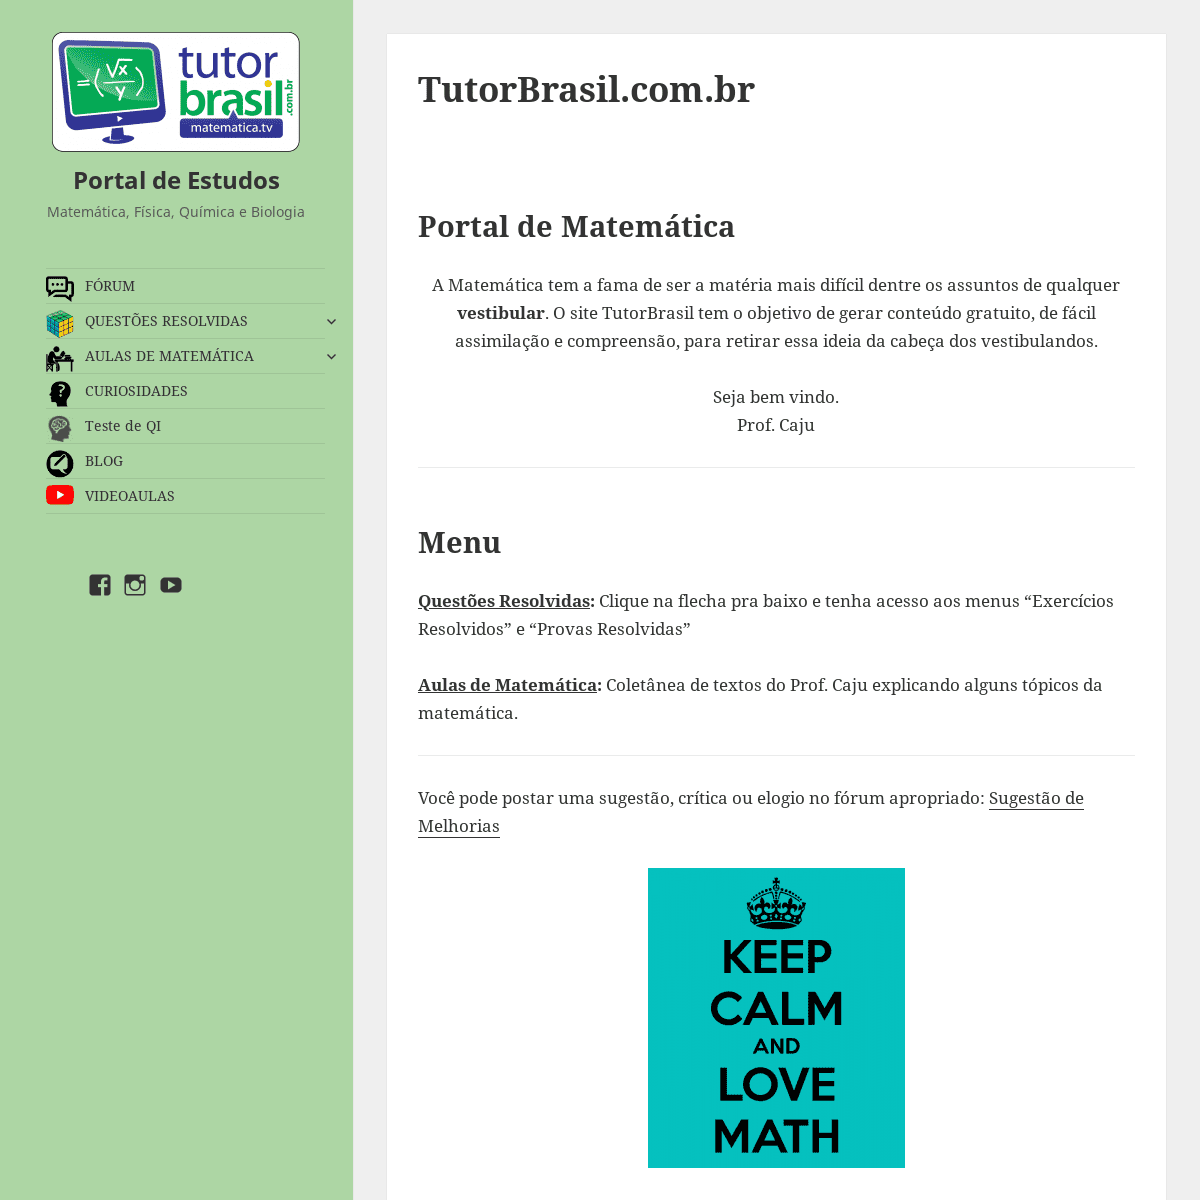 A complete backup of tutorbrasil.com.br